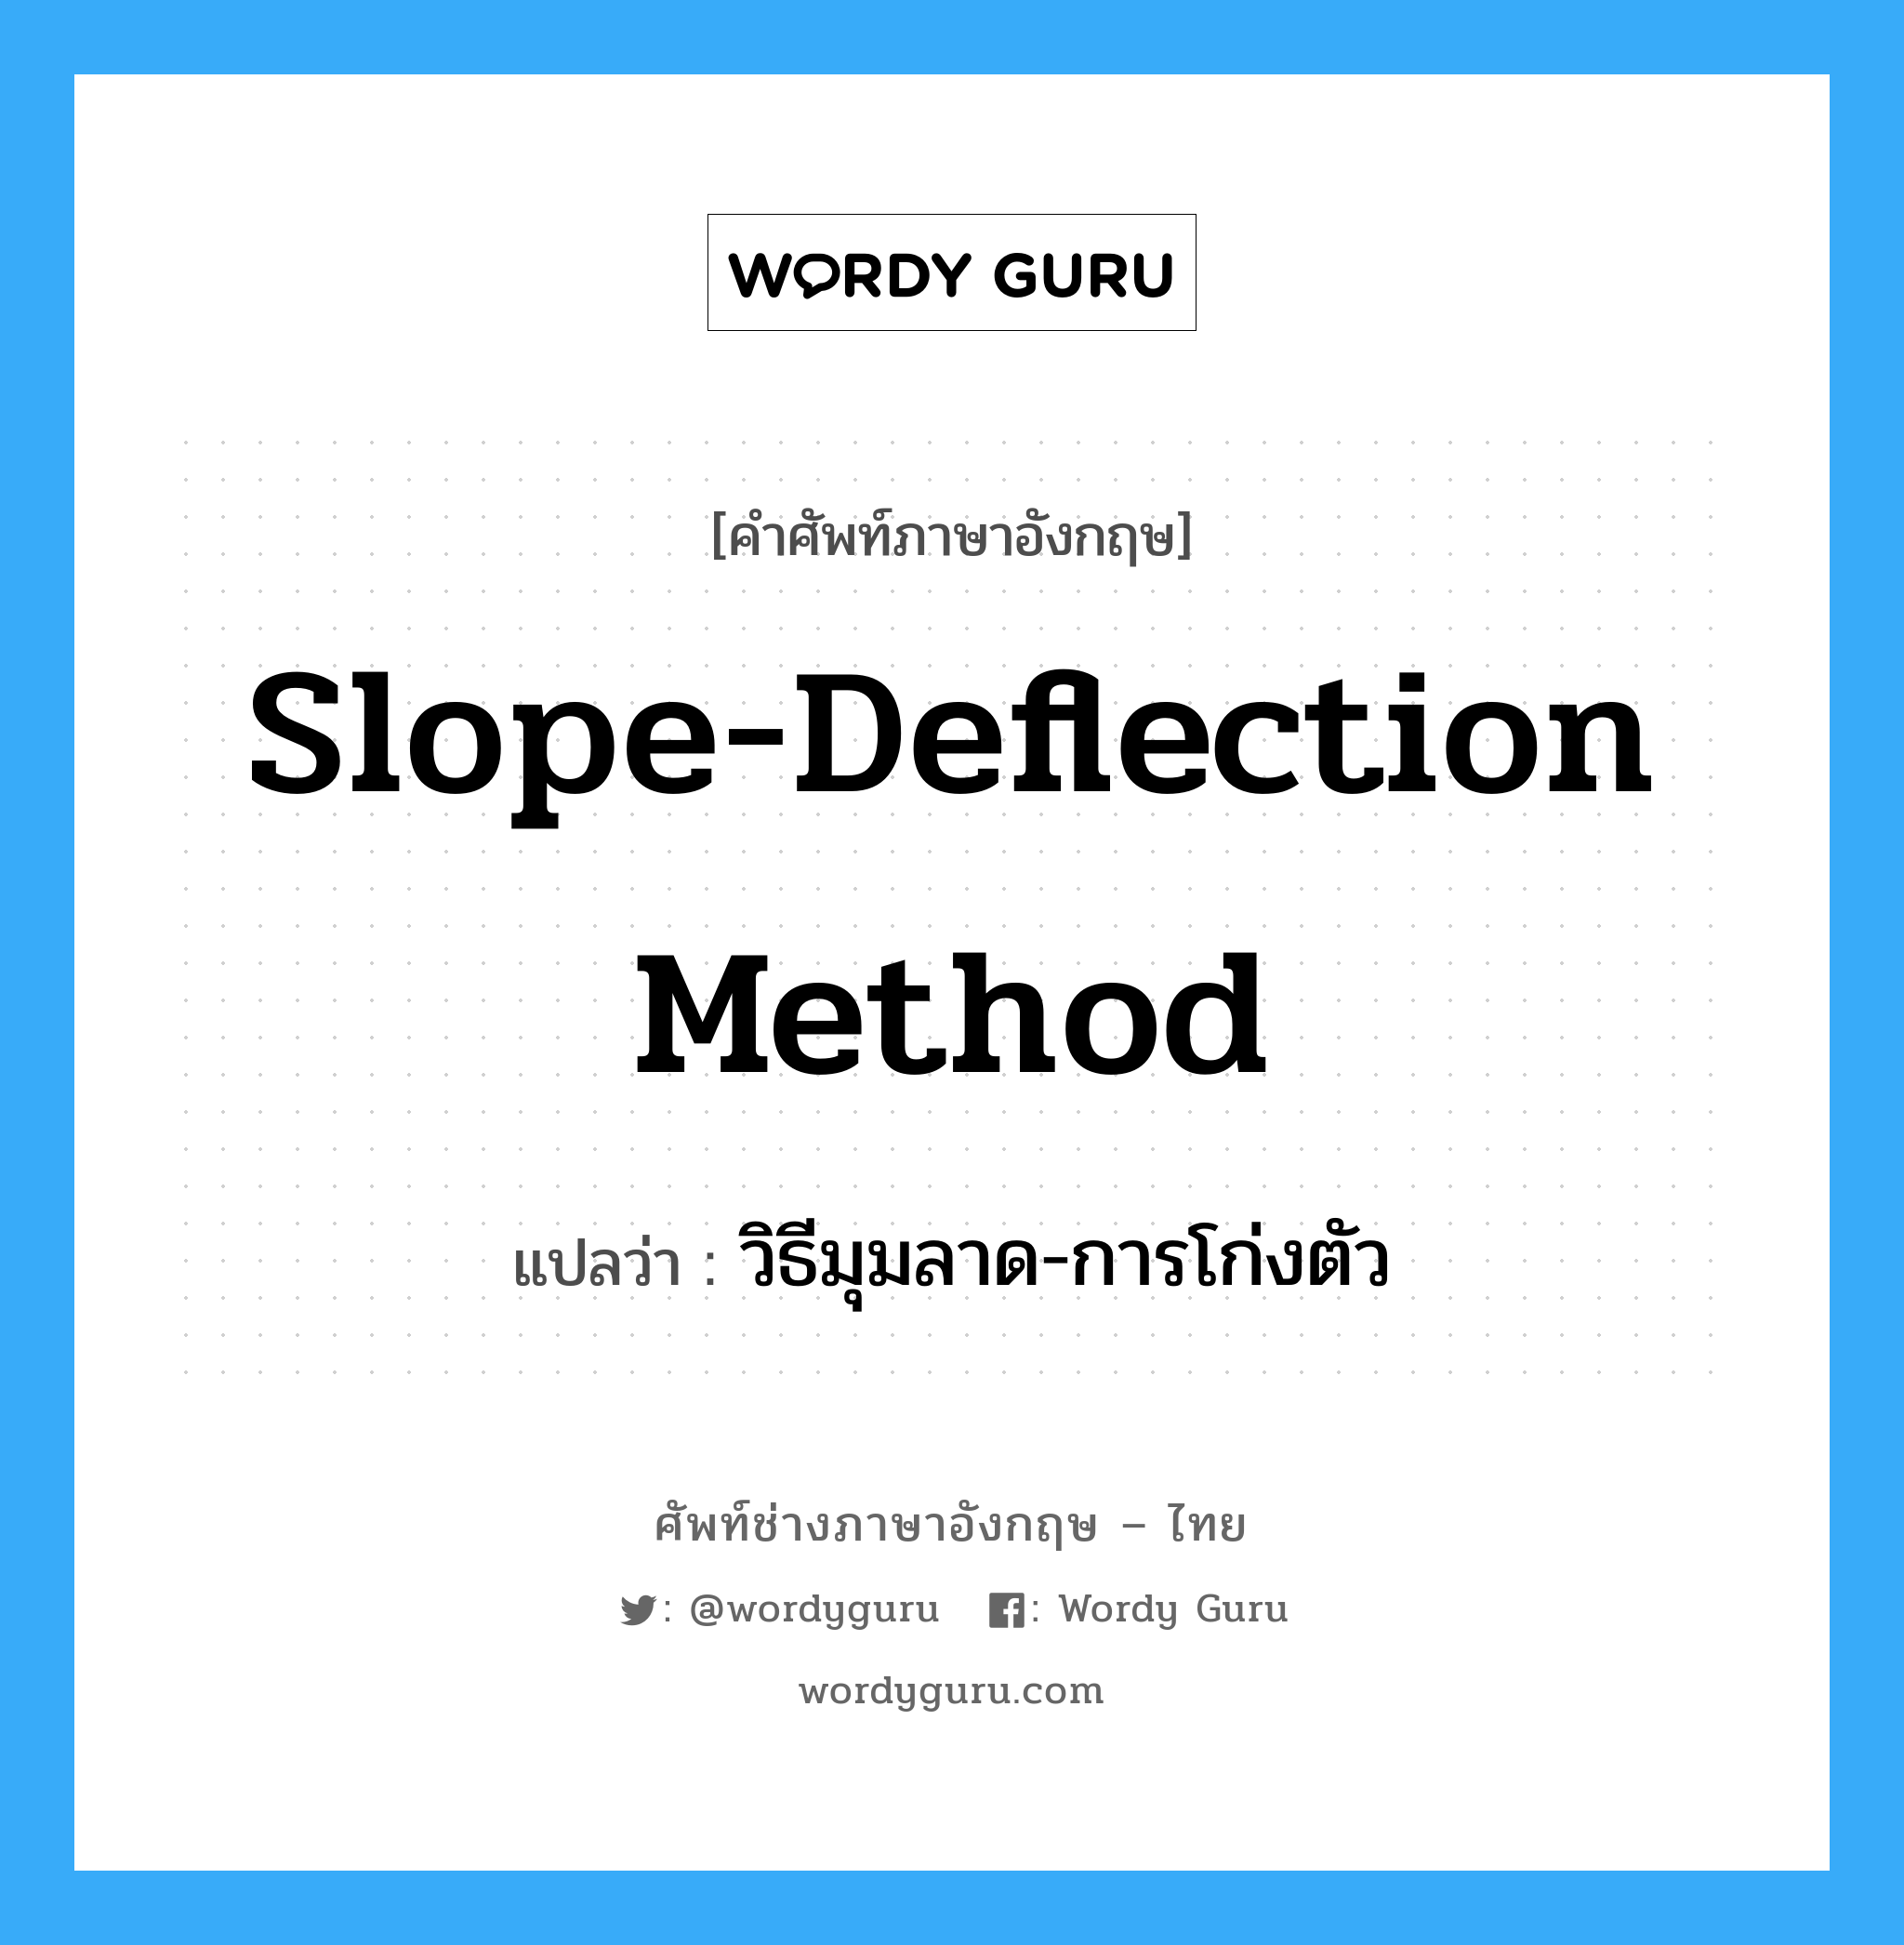 Slope-Deflection Method แปลว่า?, คำศัพท์ช่างภาษาอังกฤษ - ไทย Slope-Deflection Method คำศัพท์ภาษาอังกฤษ Slope-Deflection Method แปลว่า วิธีมุมลาด-การโก่งตัว